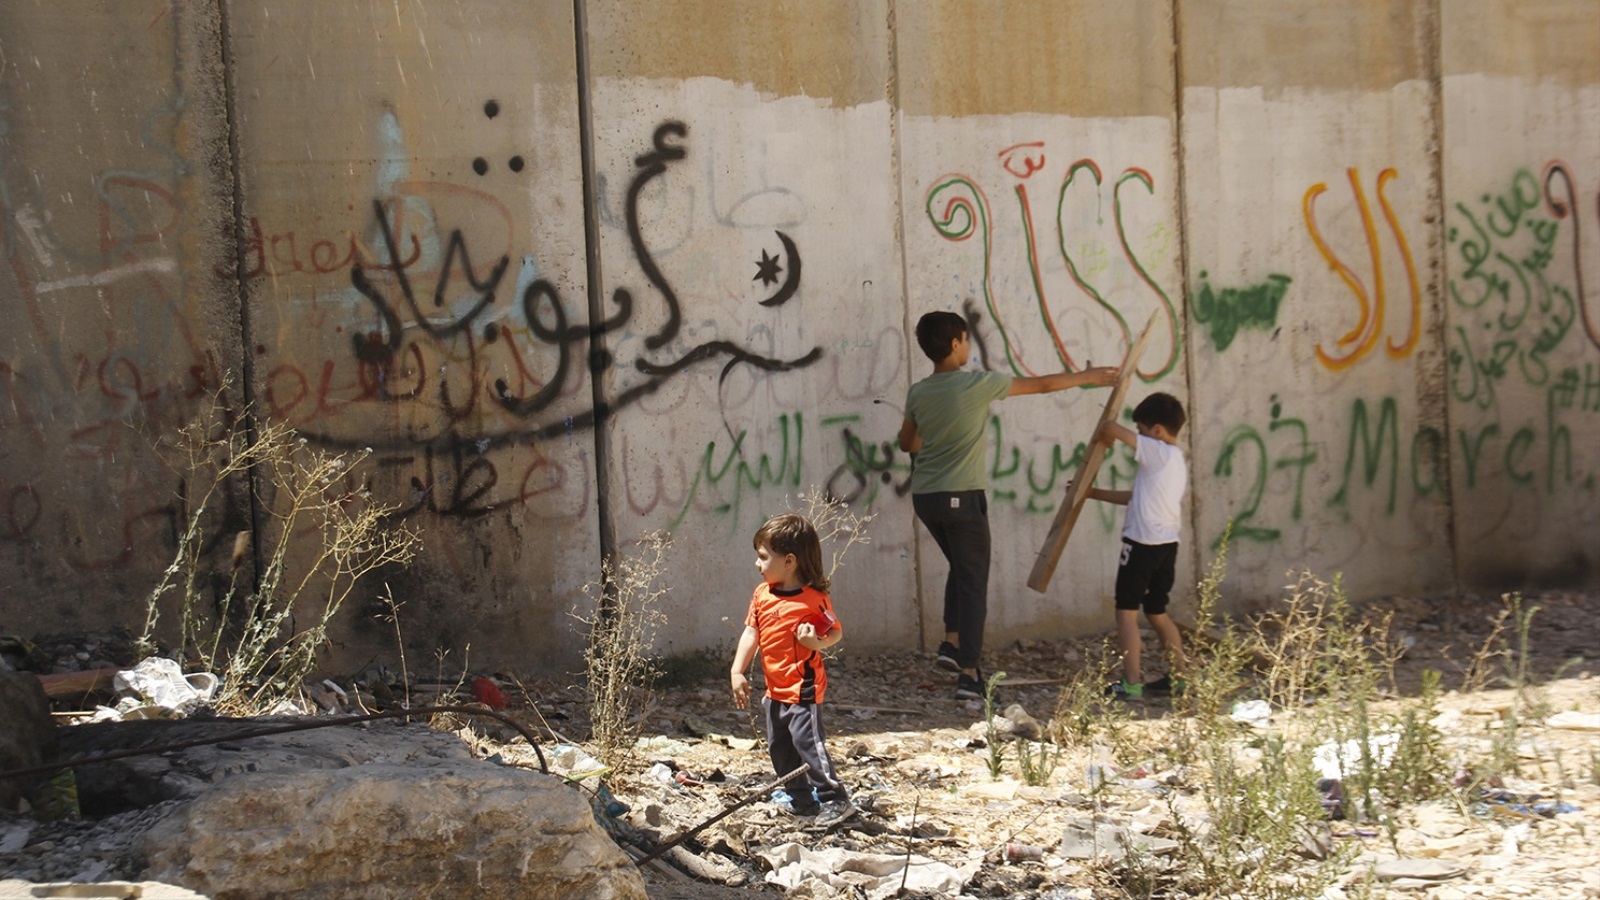 يستمر الأطفال باللعب خلف الجدار وحدهم والخوف حولهم من كل جانب بفعل ممارسات الاحتلال وملاحقته (الجزيرة)